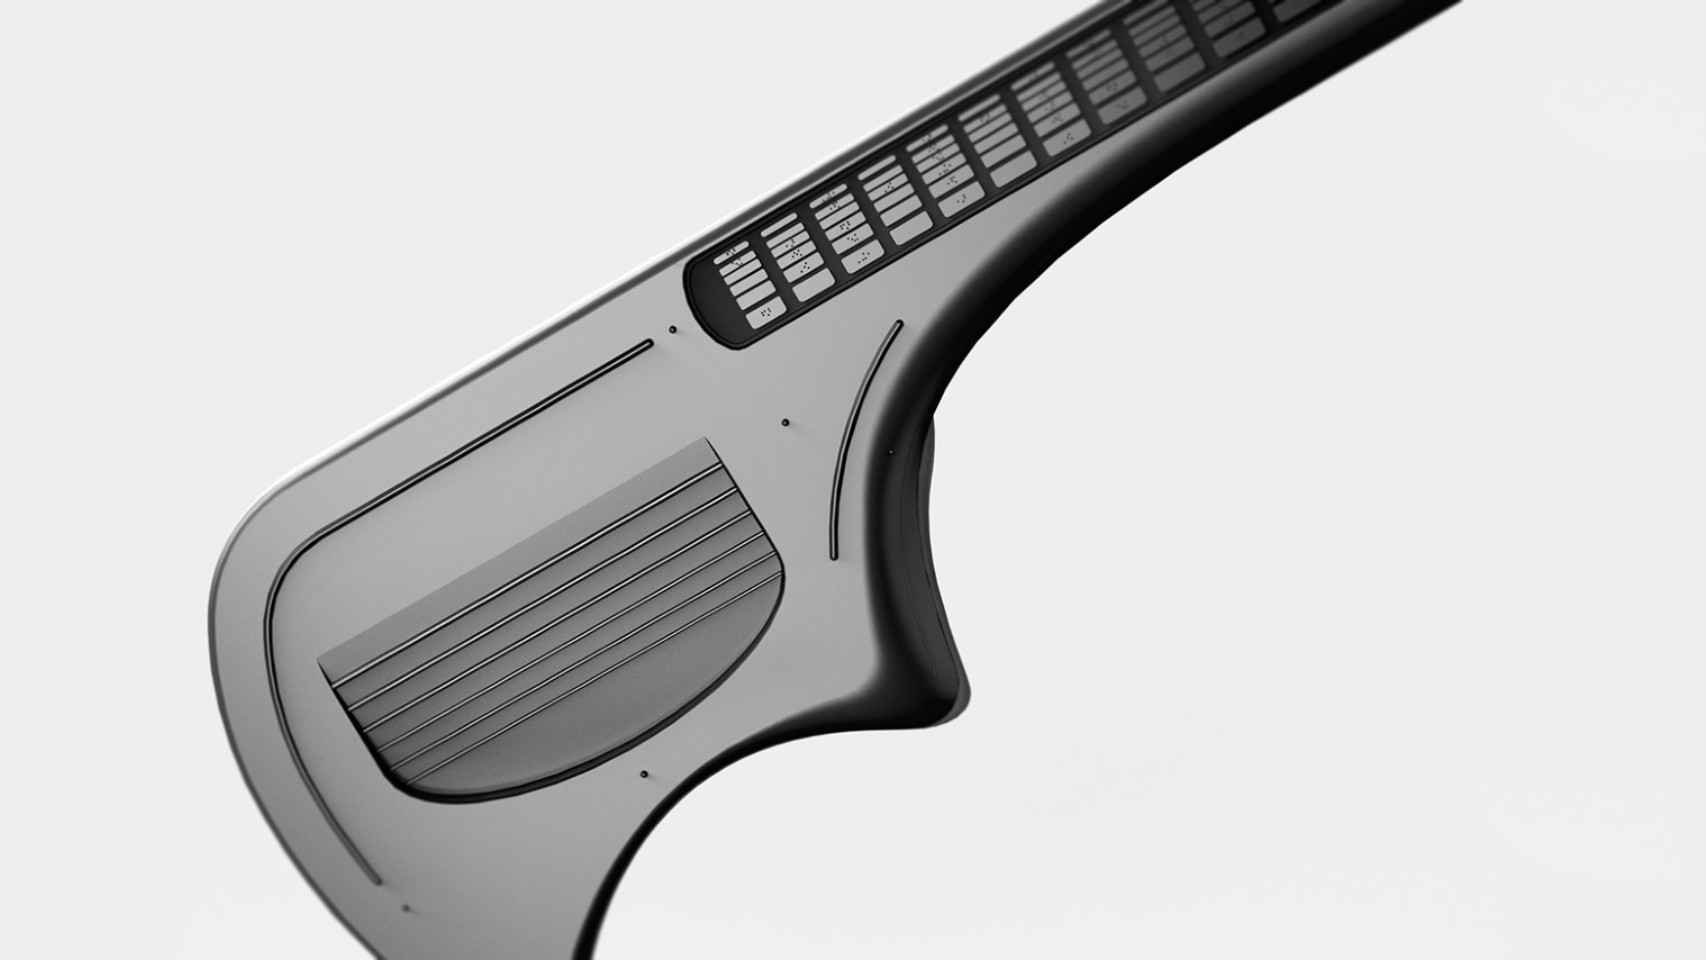 Fotografía de la guitarra diseñada en Corea para ser utilizada por personas con discapacidad visual. Tiene un color gris oscuro